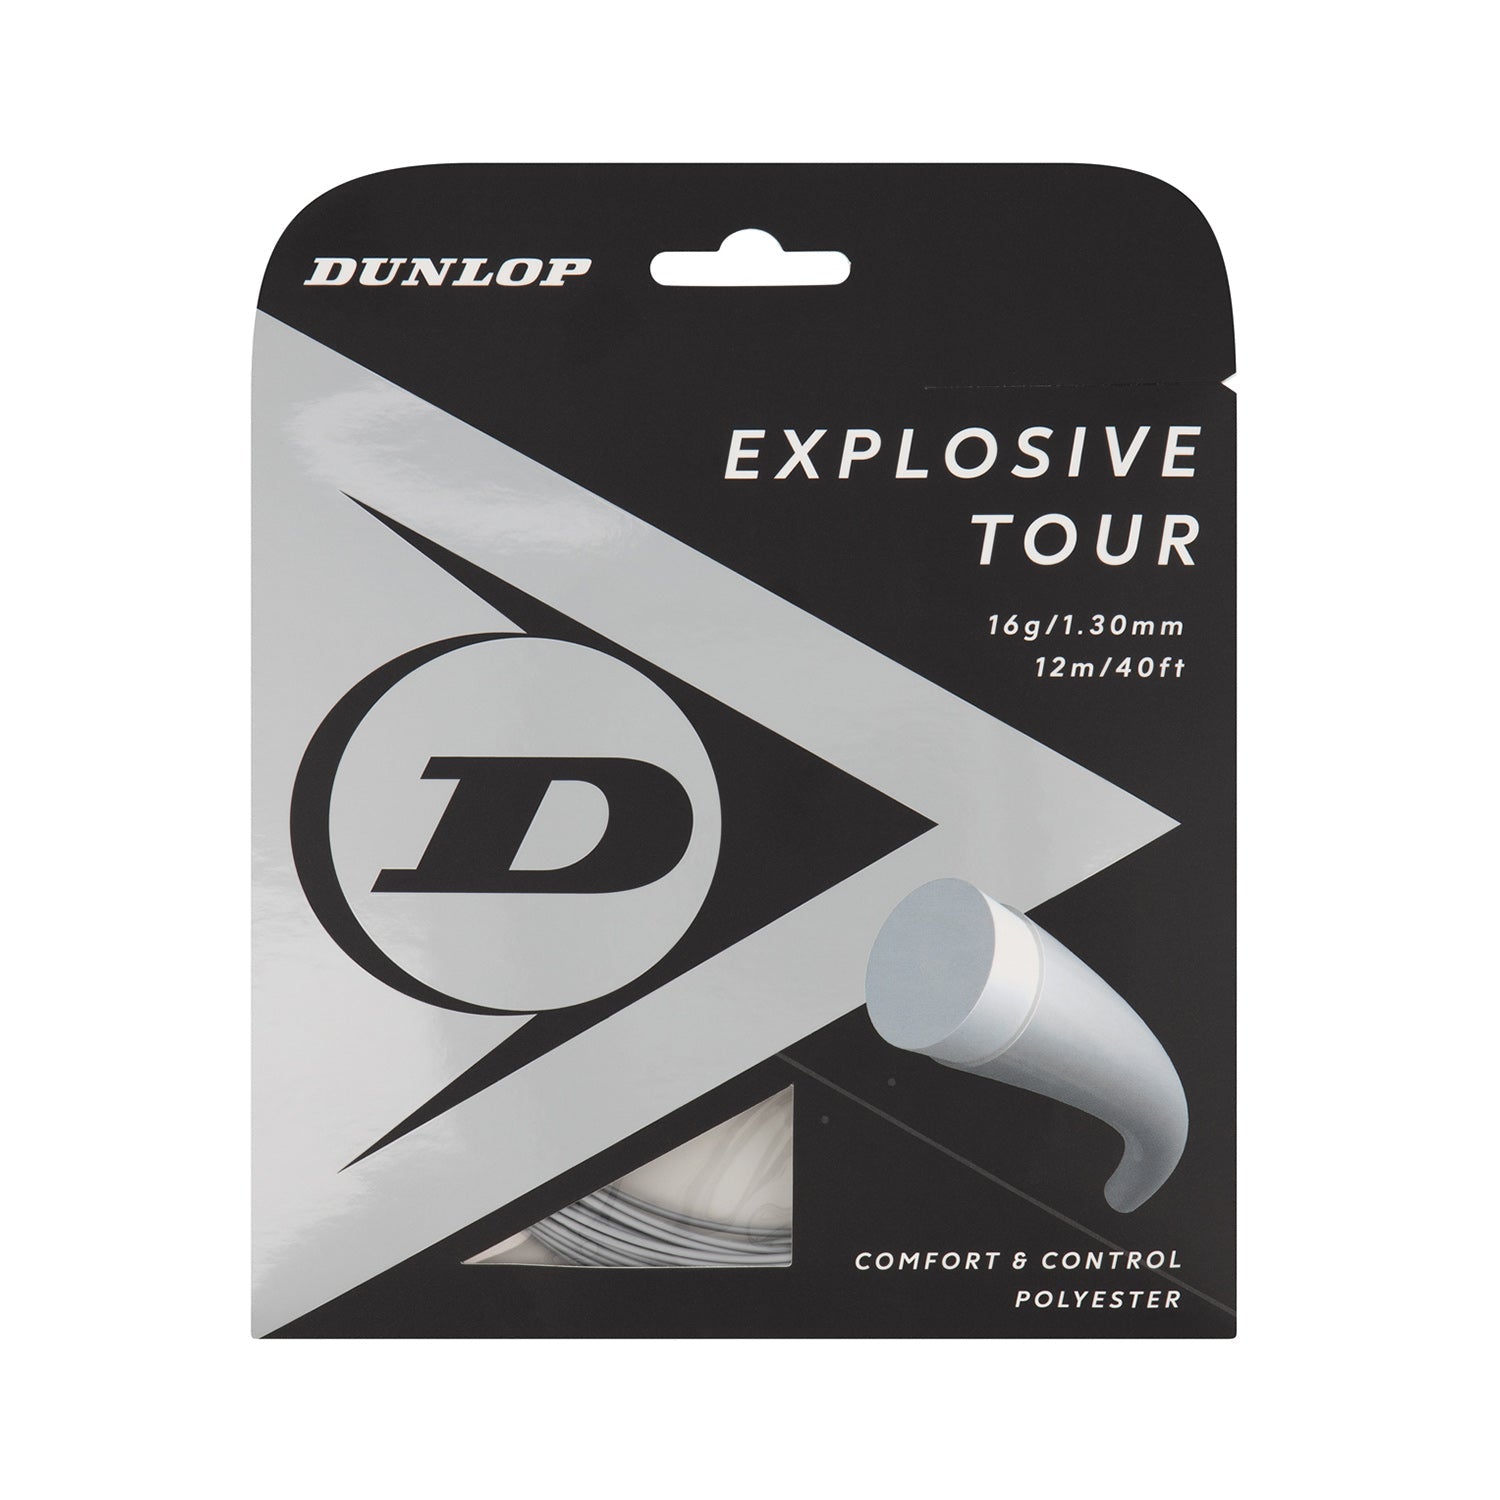 Dunlop FX 500 Tennis Package